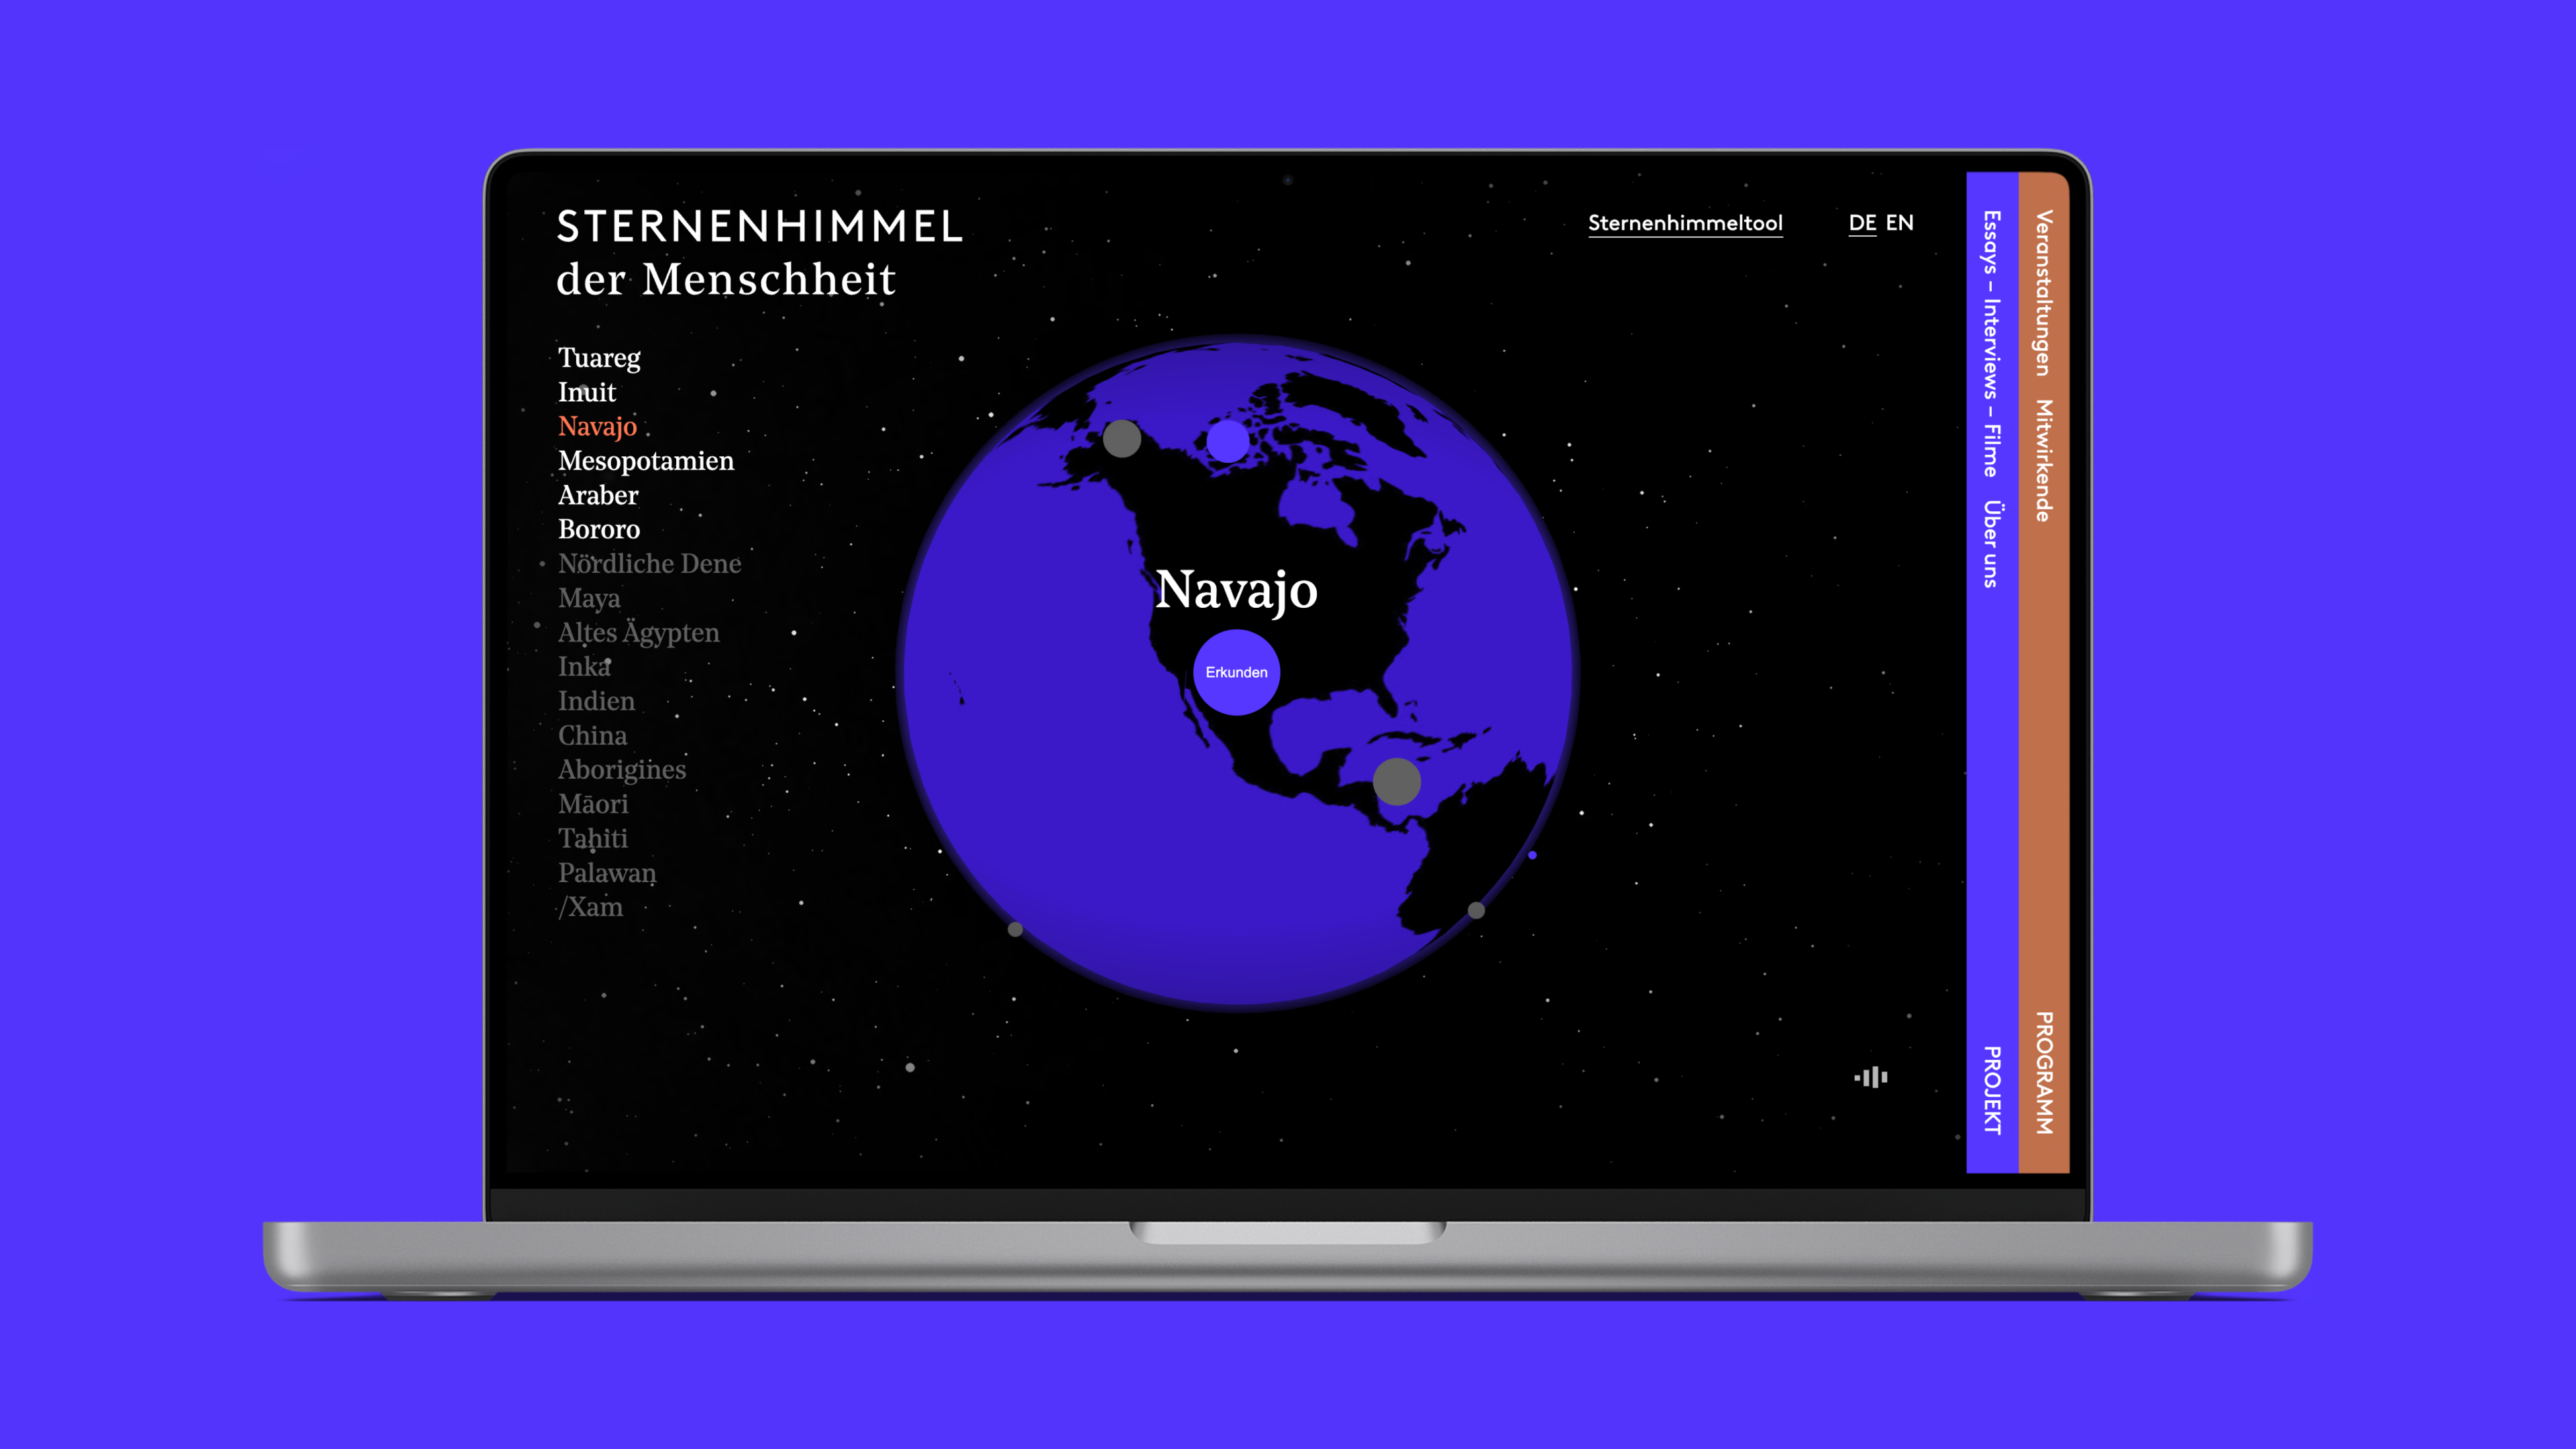 Ein Laptop-Bildschirm, der die Webseite "Heavens of Mankind" anzeigt. Es handelt sich um eine digitale Erkundung der himmlischen Erzählungen verschiedener Kulturen, die eine Weltkarte und eine Liste verschiedener kultureller Interpretationen des Kosmos enthält.